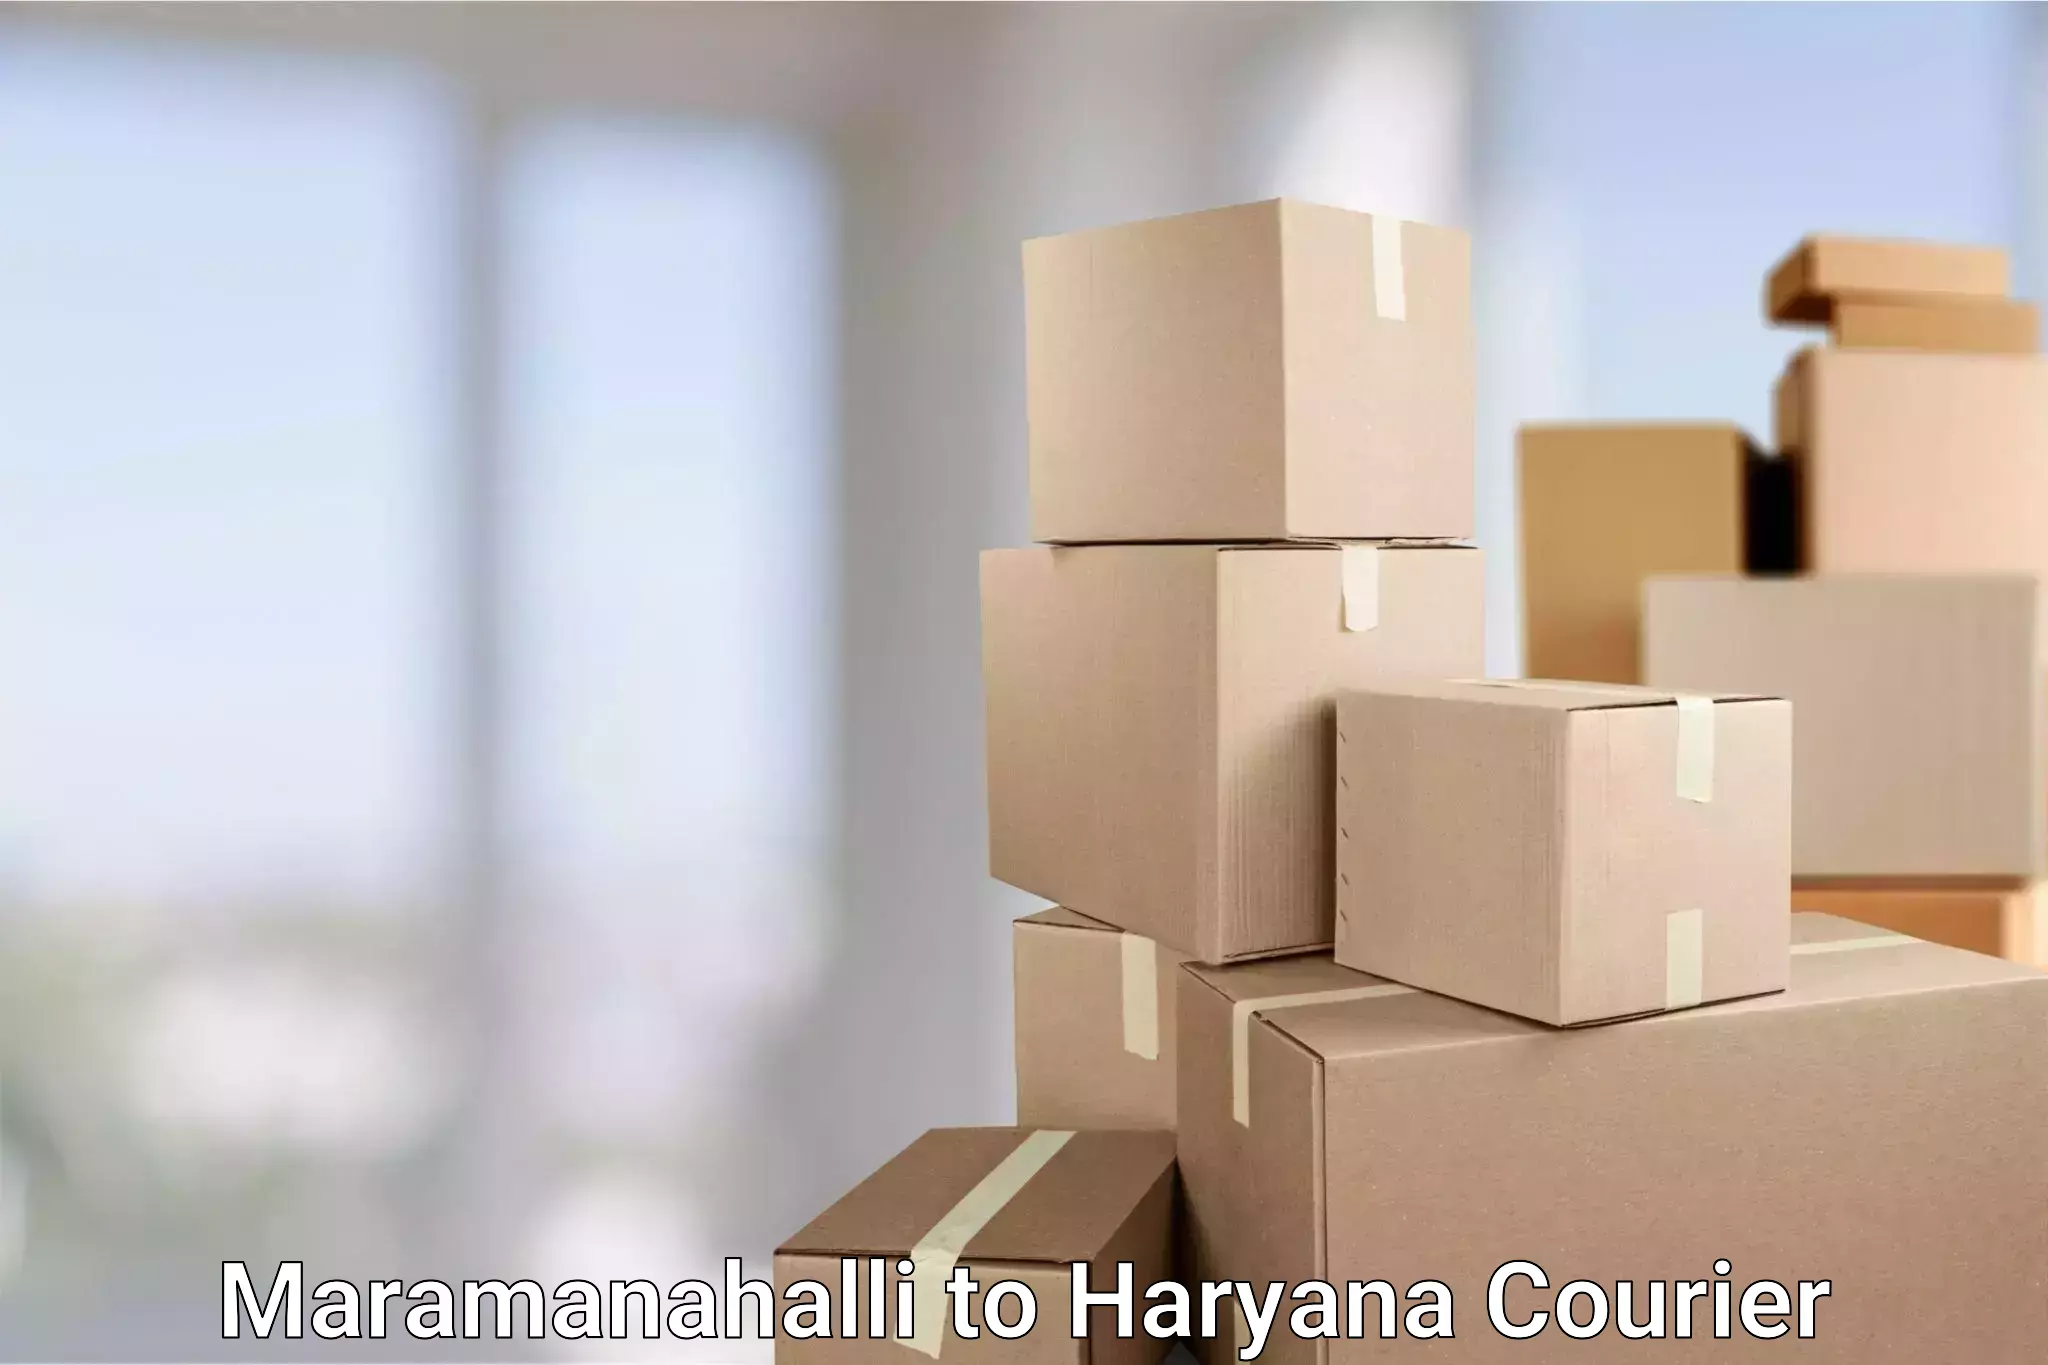 Air courier services Maramanahalli to NCR Haryana